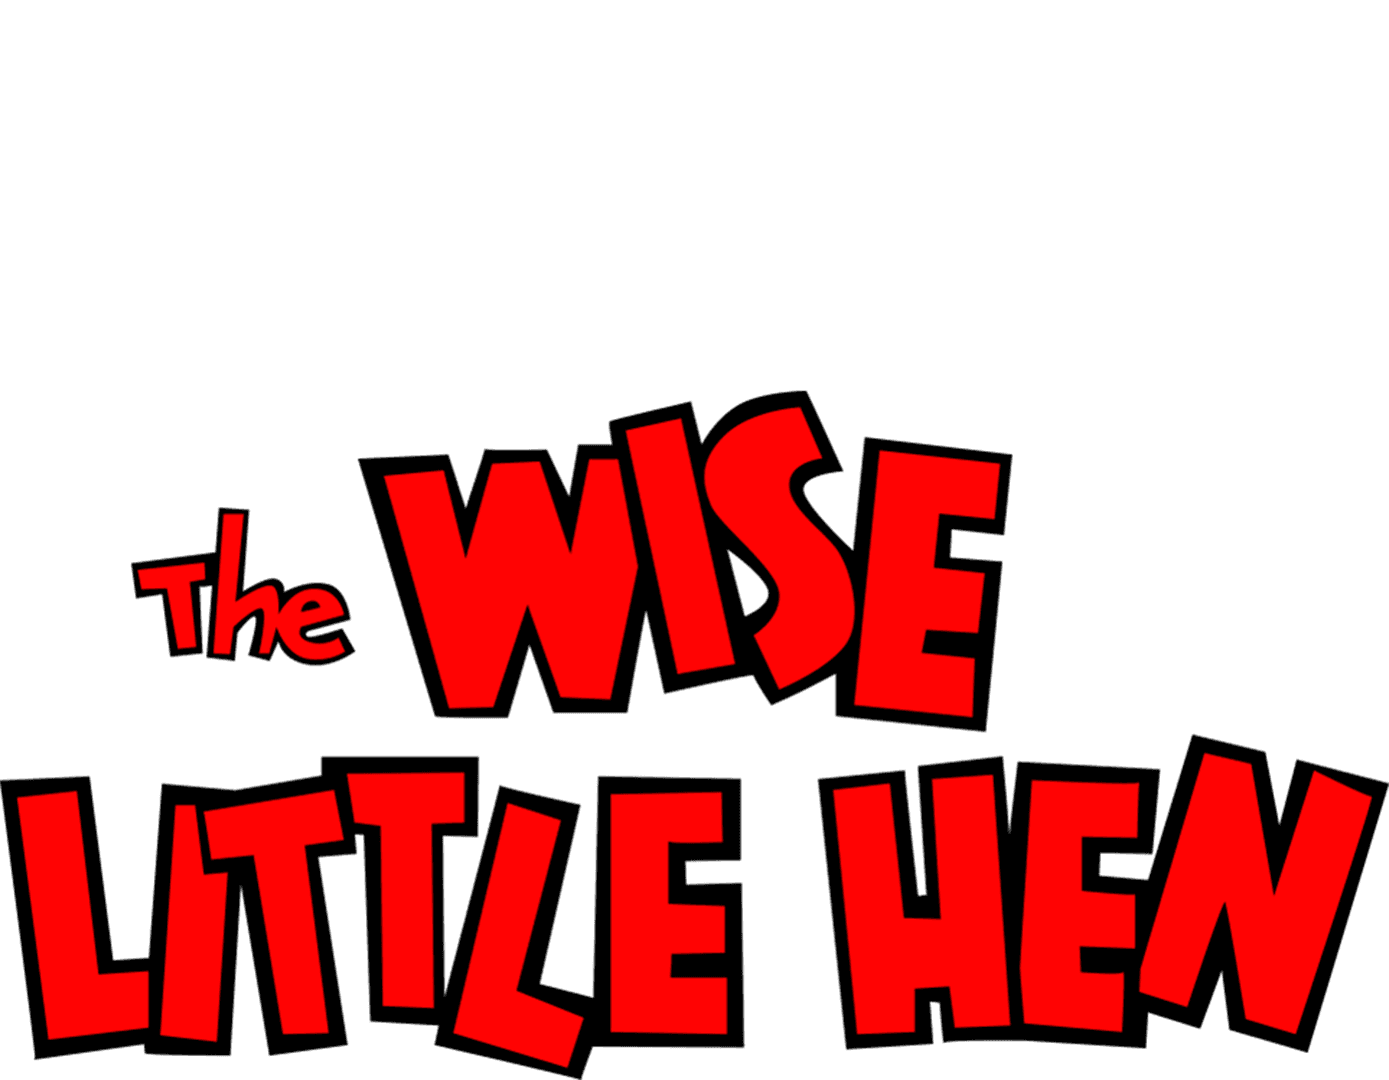 The Wise Little Hen logo